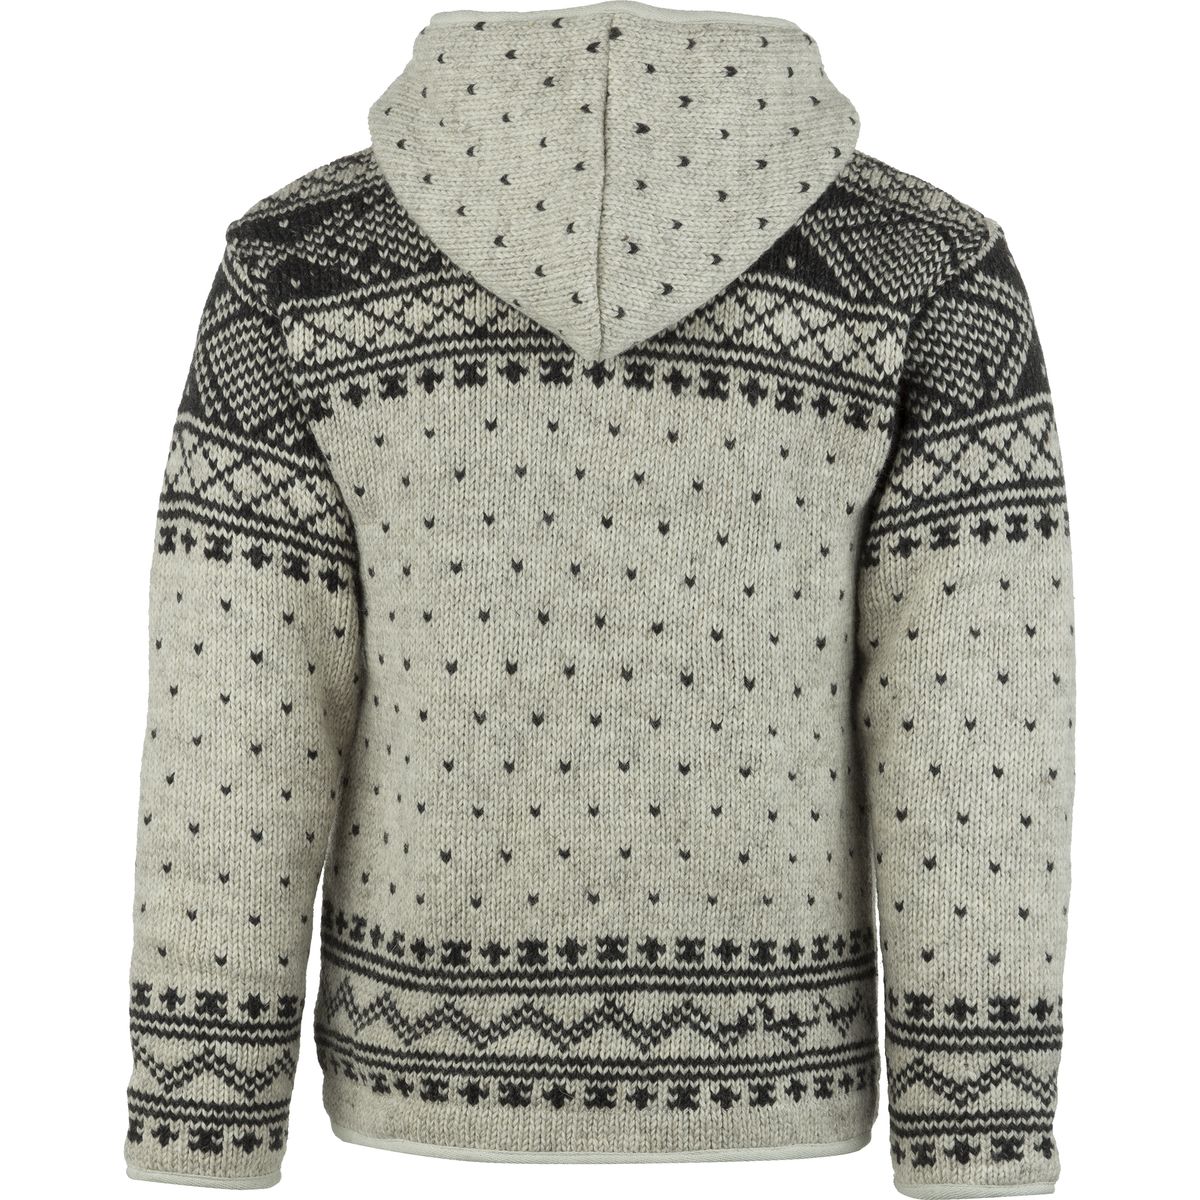 Lost Horizons Zurich Sweater - Men's